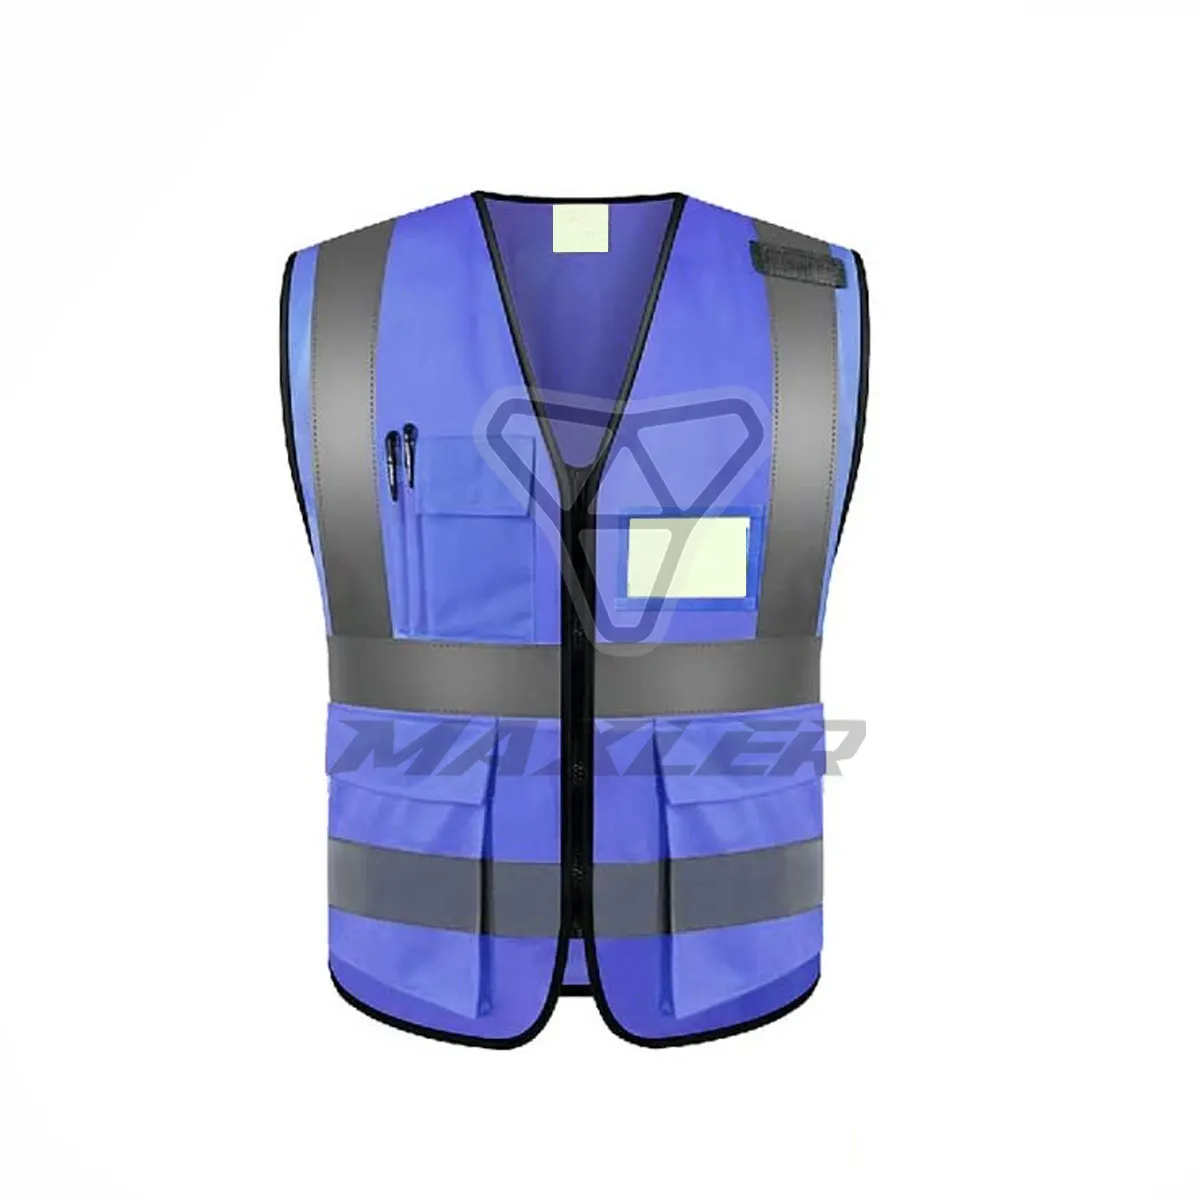 Oi Vis Workwear Colete Reflexivo Cor Azul Correndo Roupas De Trabalho Para Construção Homens Construção Workwear Macacões Coletes De Segurança